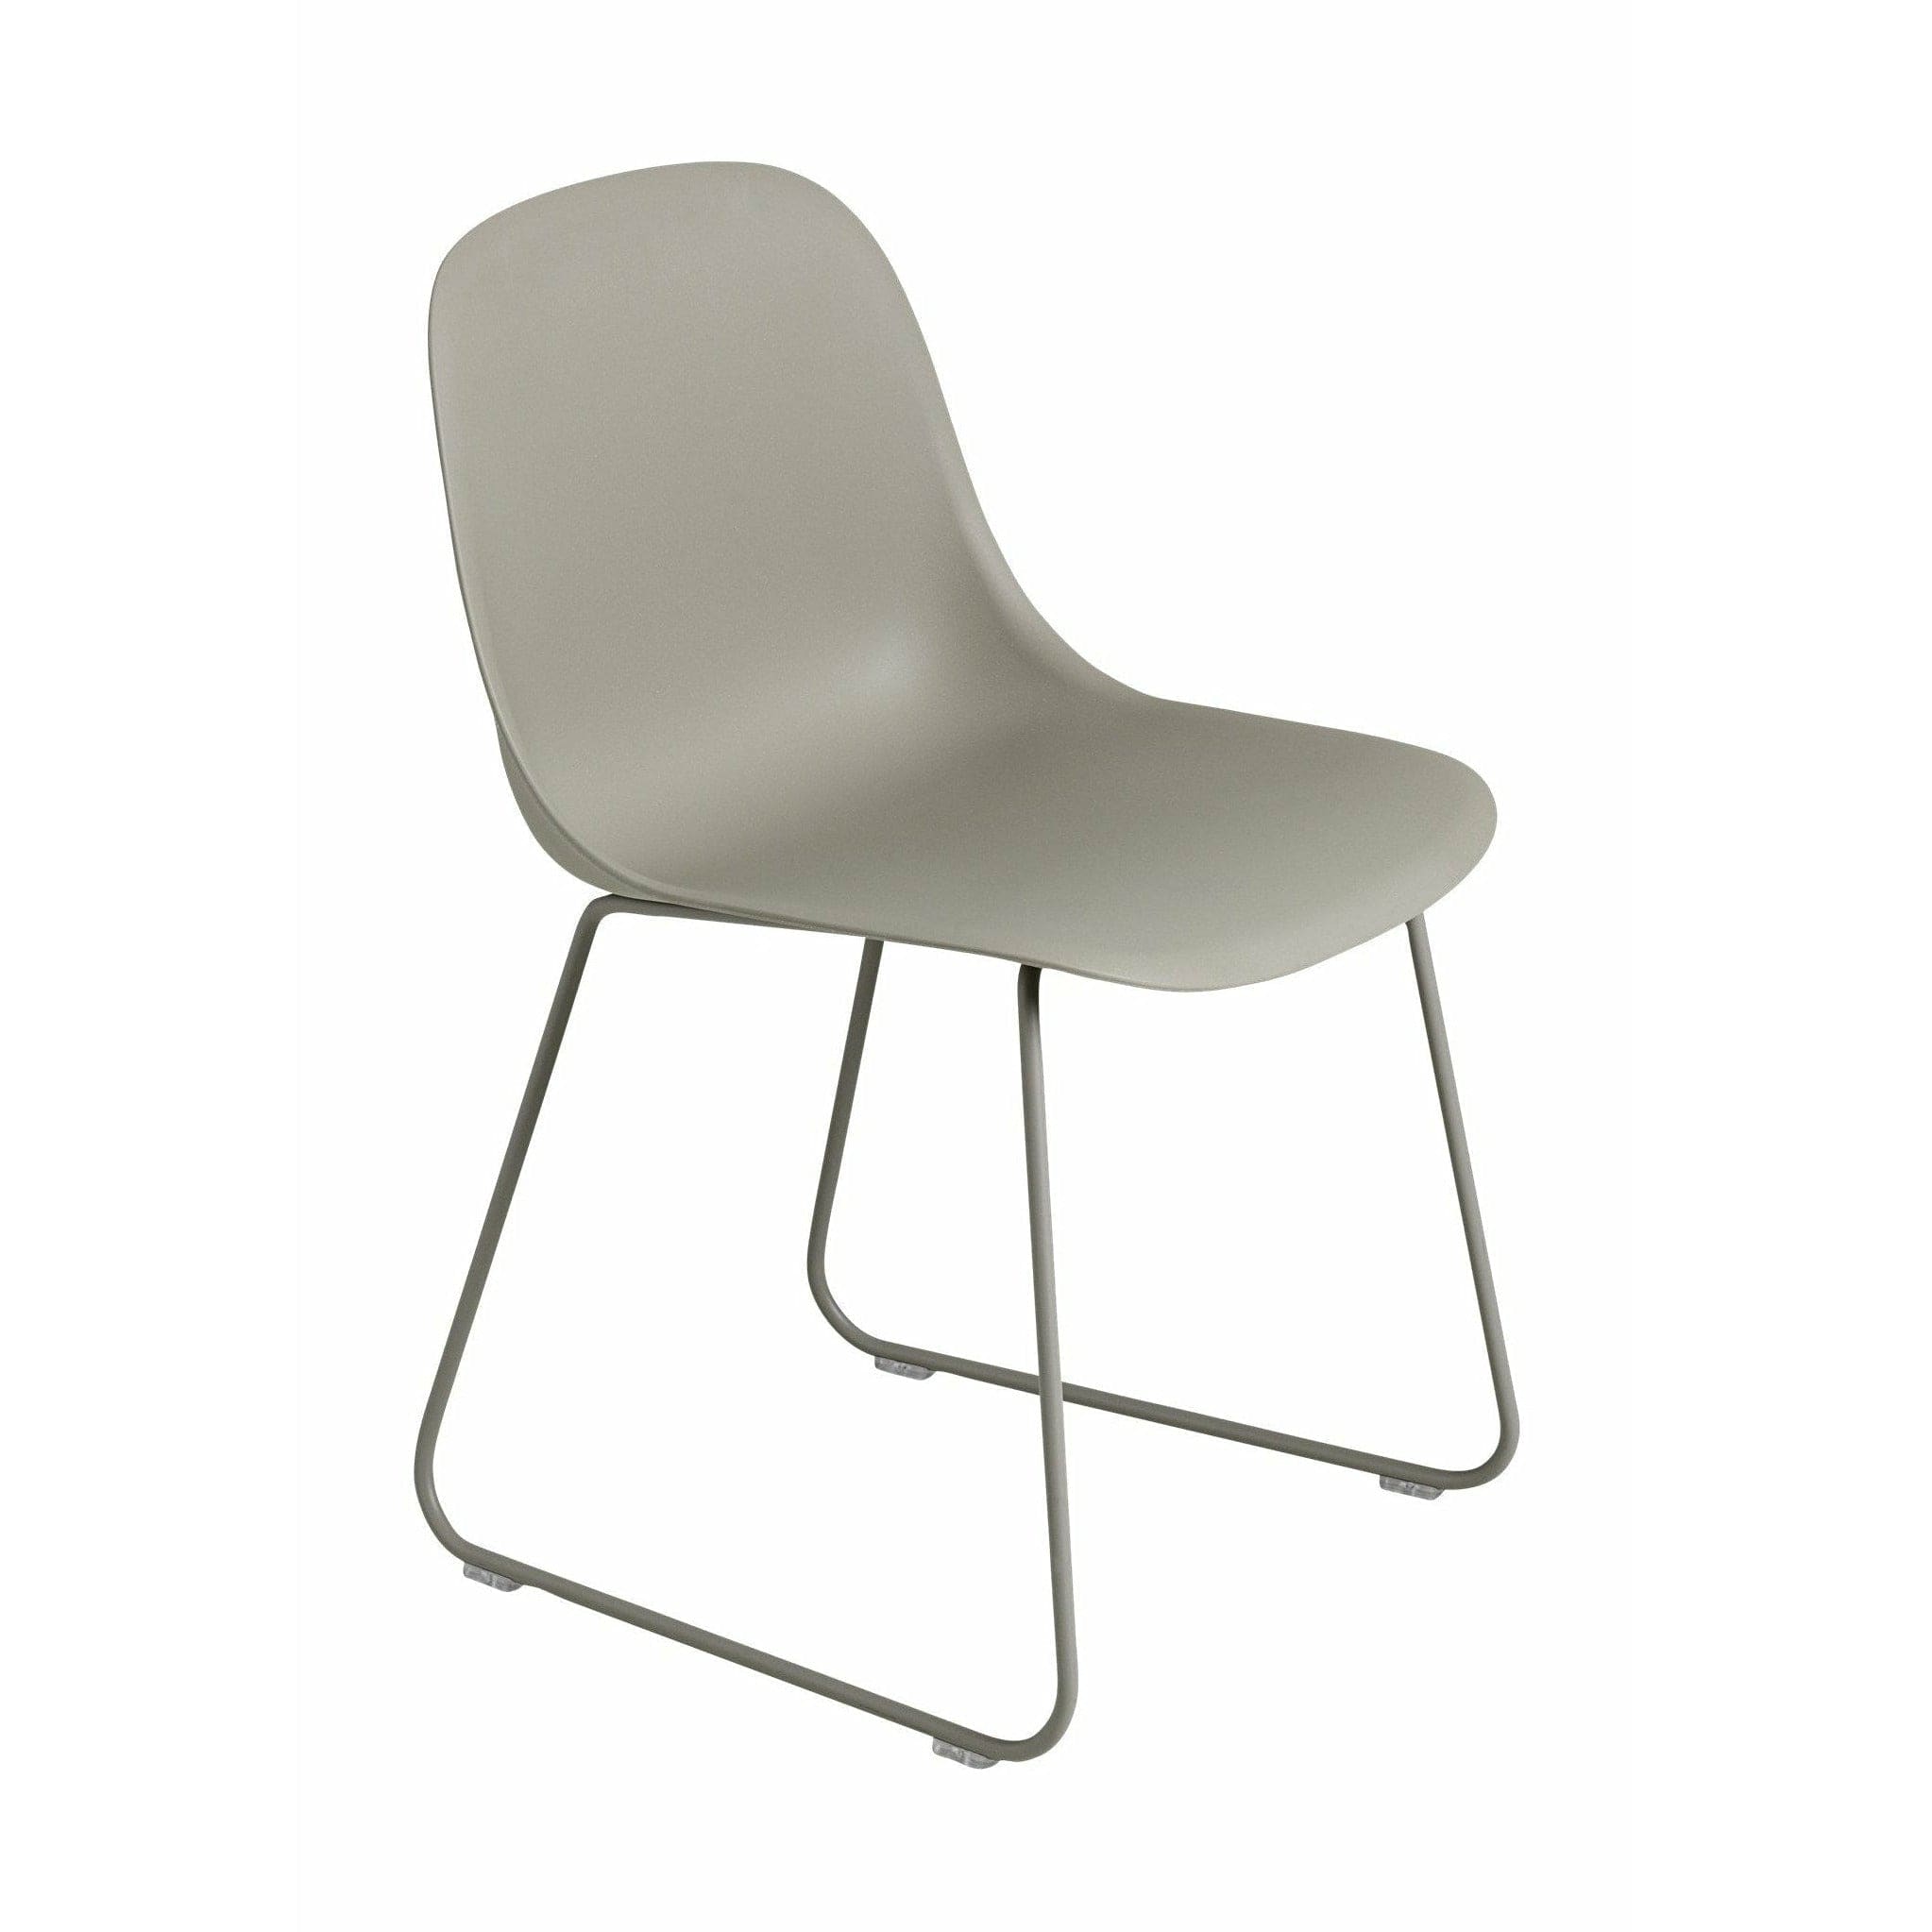 Muuto Kuitupuolen tuoli, joka on valmistettu kierrätetystä muovikelkapohjasta, harmaa/harmaa